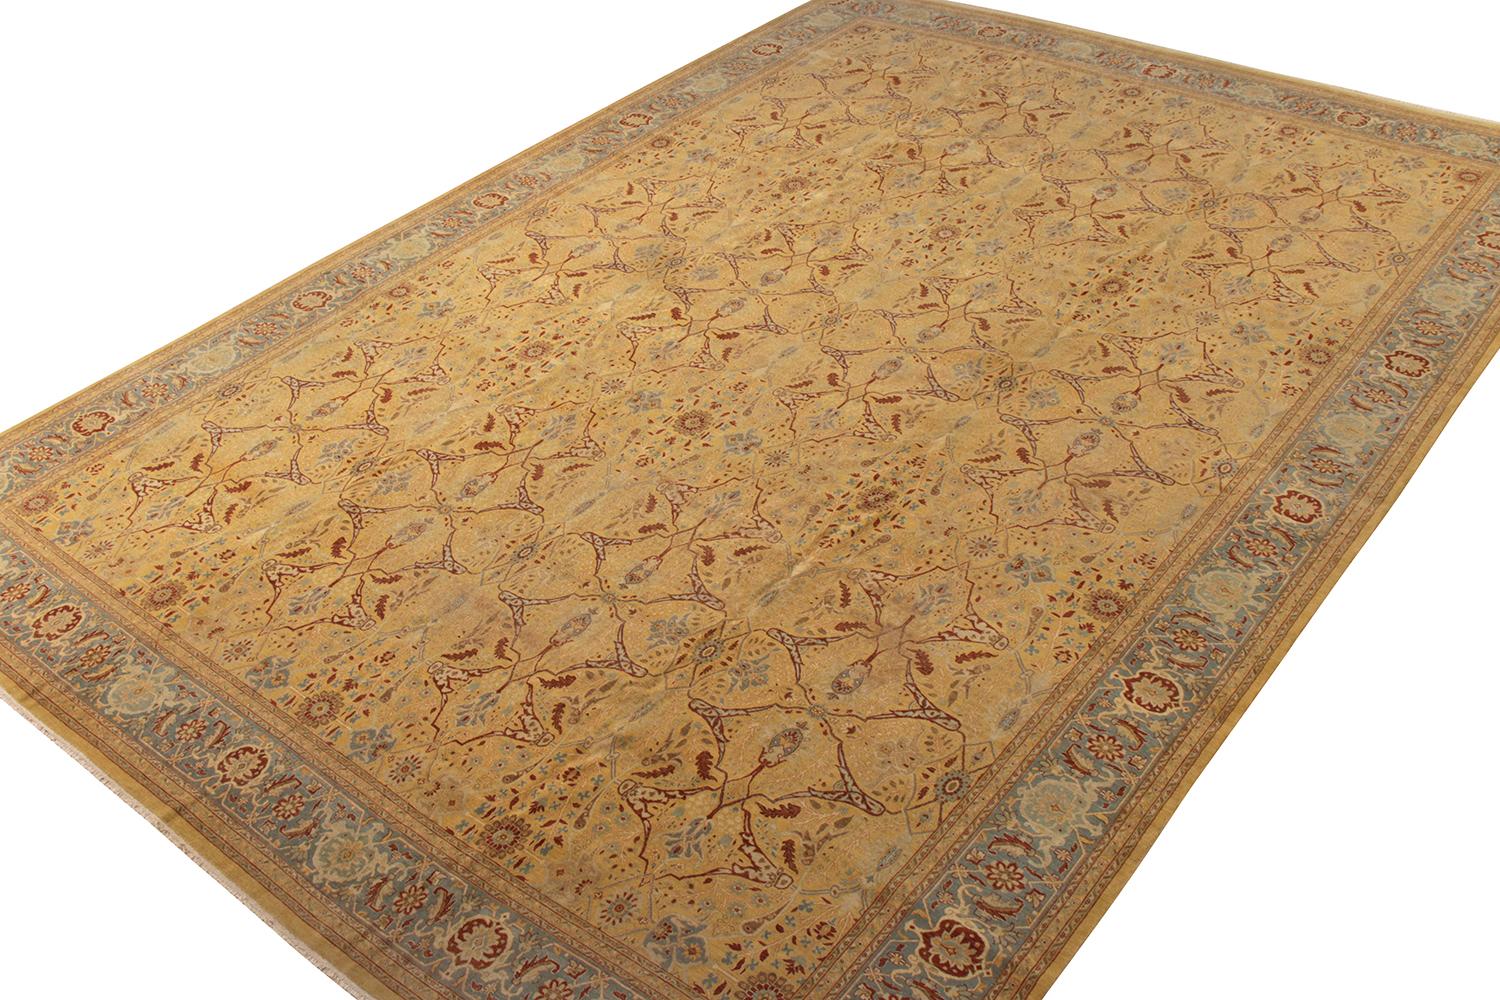 Indian Rug & Kilim’s Tabriz Style Rug in Beige Gold Floral Pattern For Sale